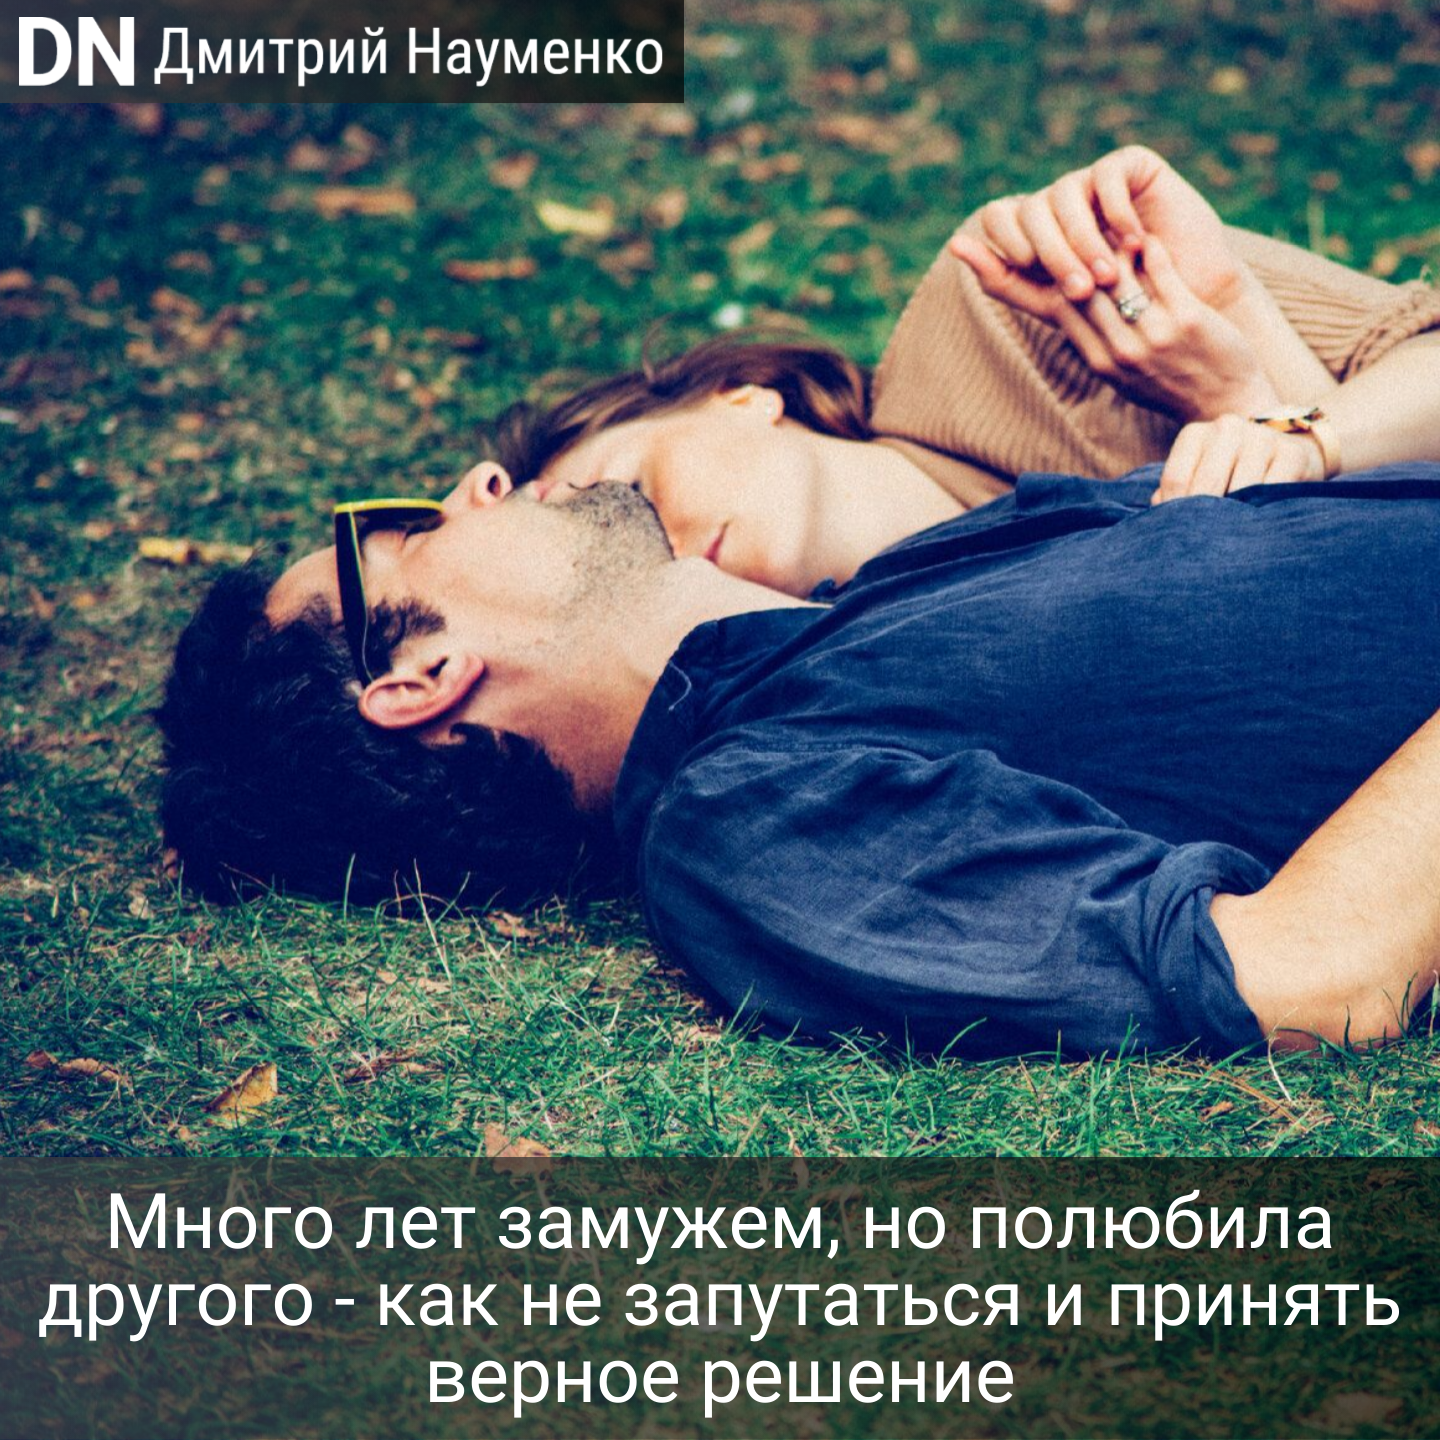 Много лет замужем, но полюбила другого - как не запутаться и принять верное решение - Дмитрий Науменко